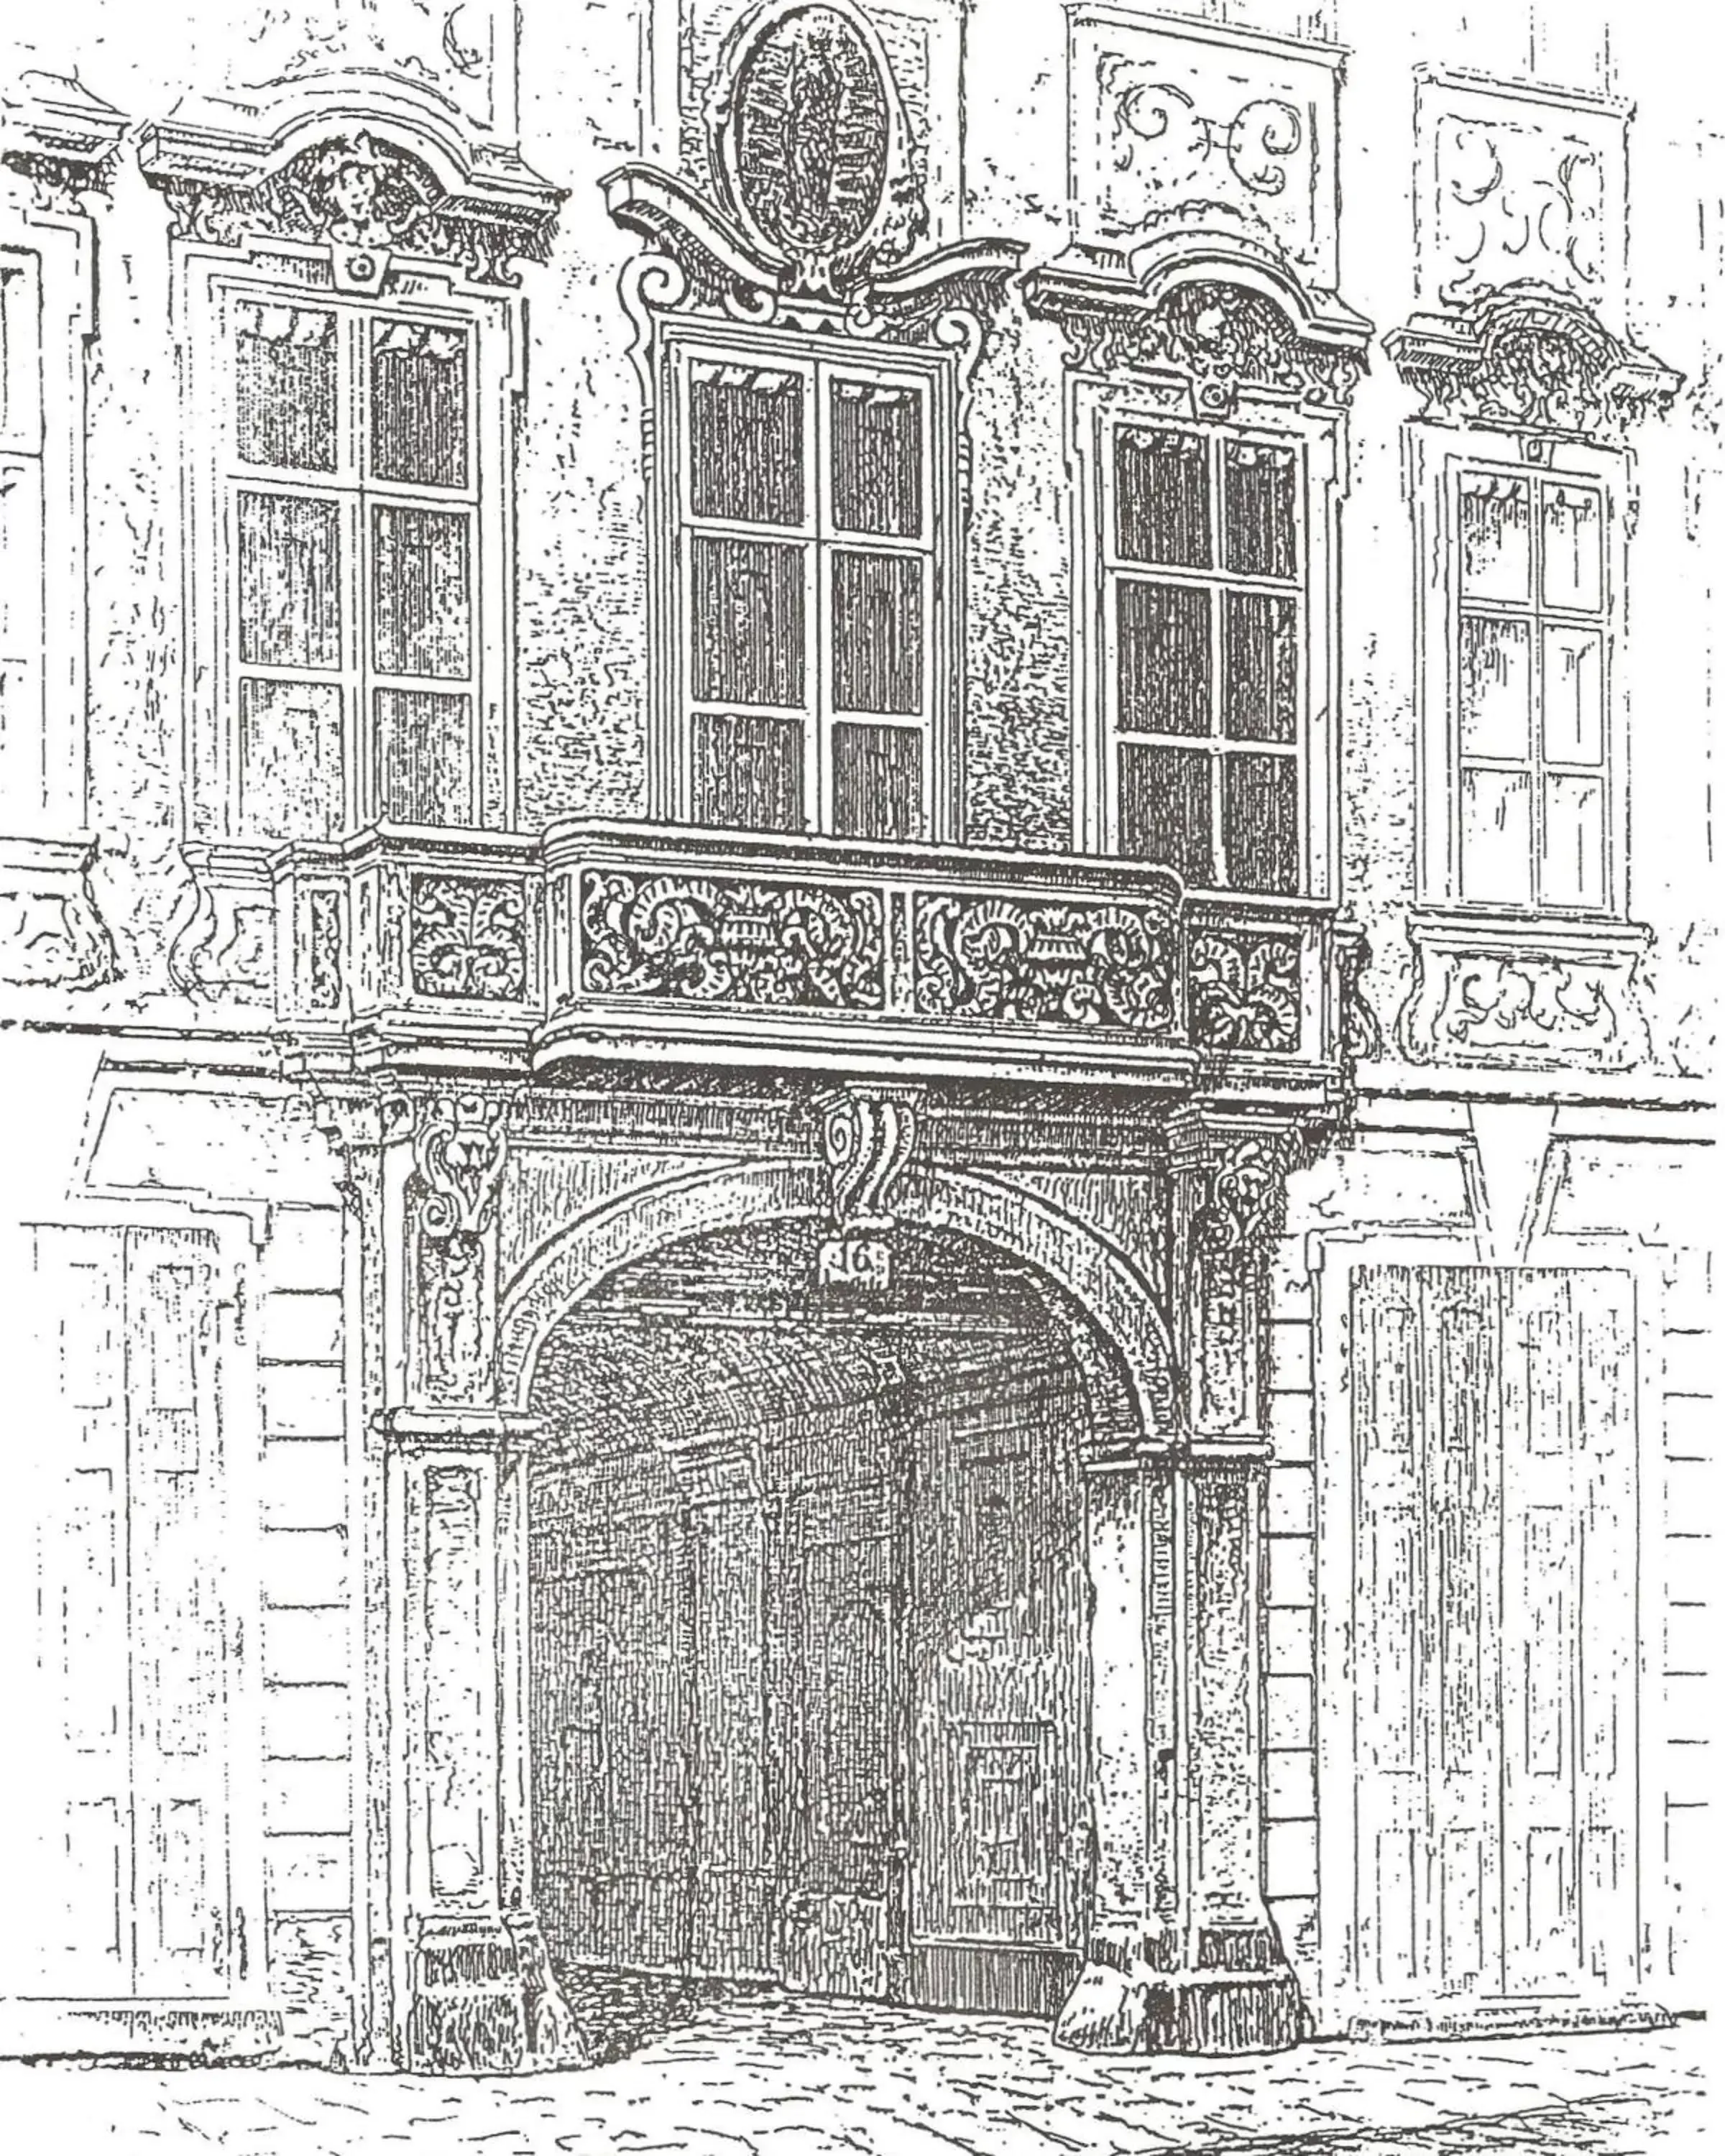 Property building in Schlosshotel Römischer Kaiser